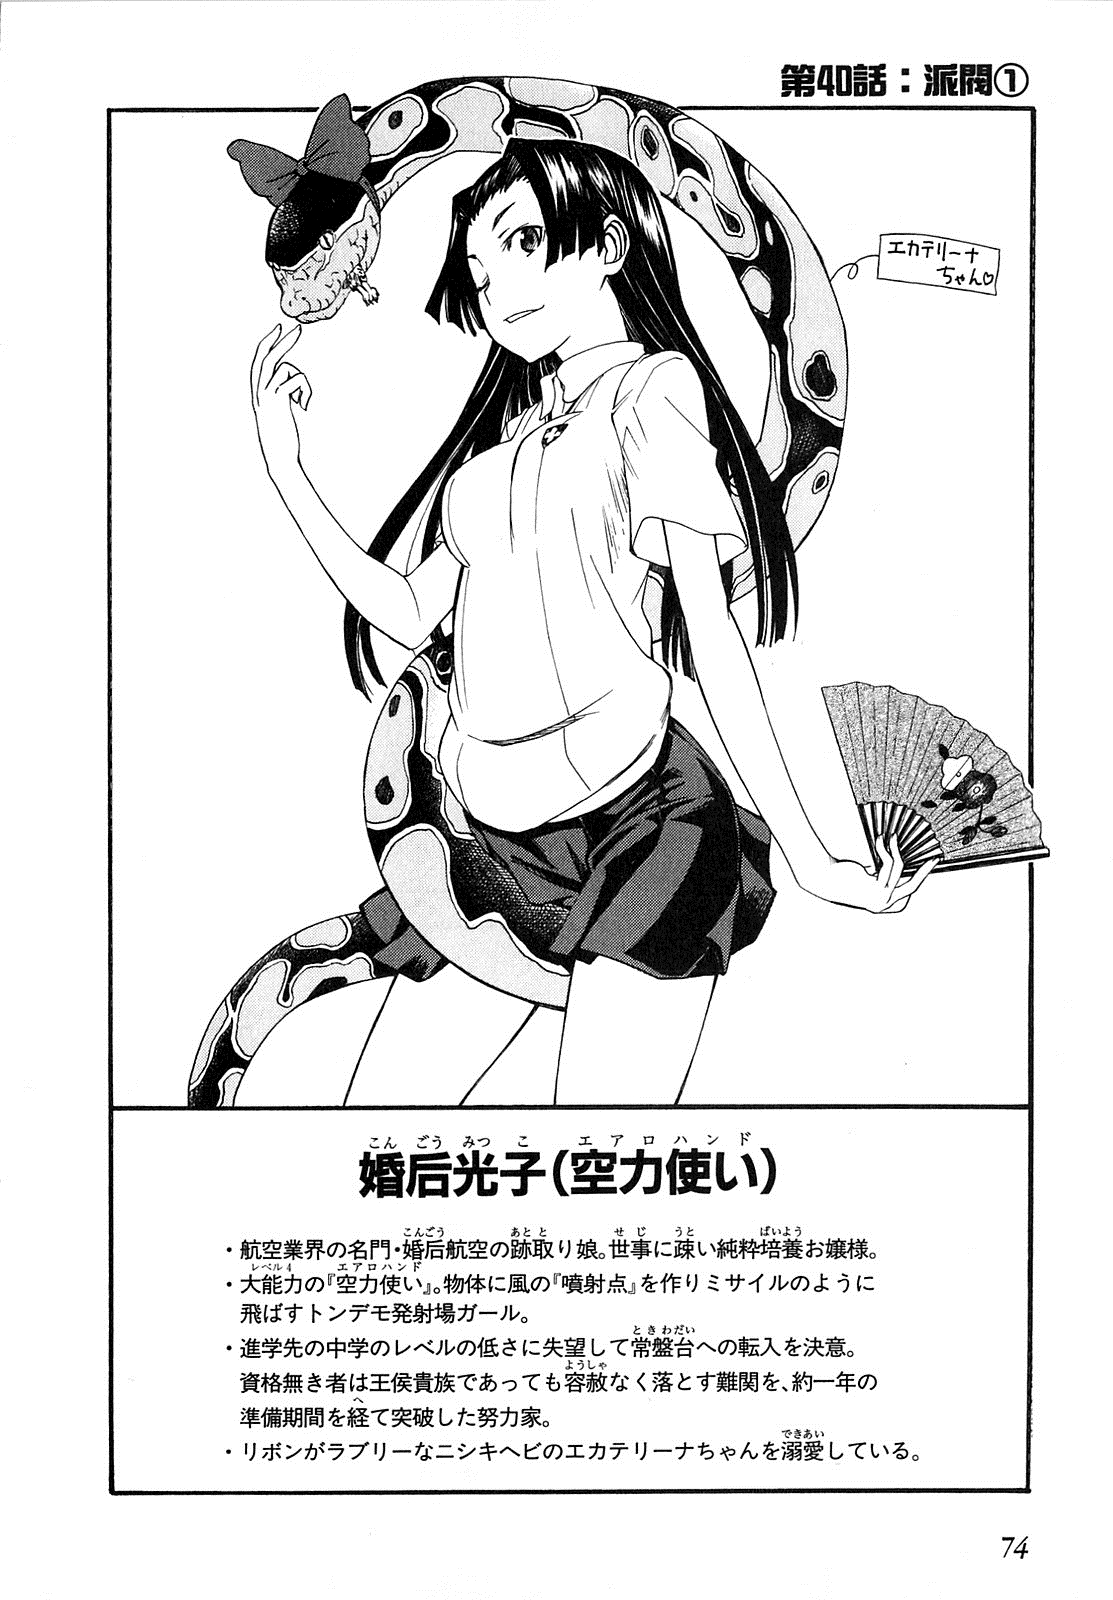 Toaru Kagaku No Railgun Manga Chapter 040 Toaru Majutsu No Index Wiki Fandom